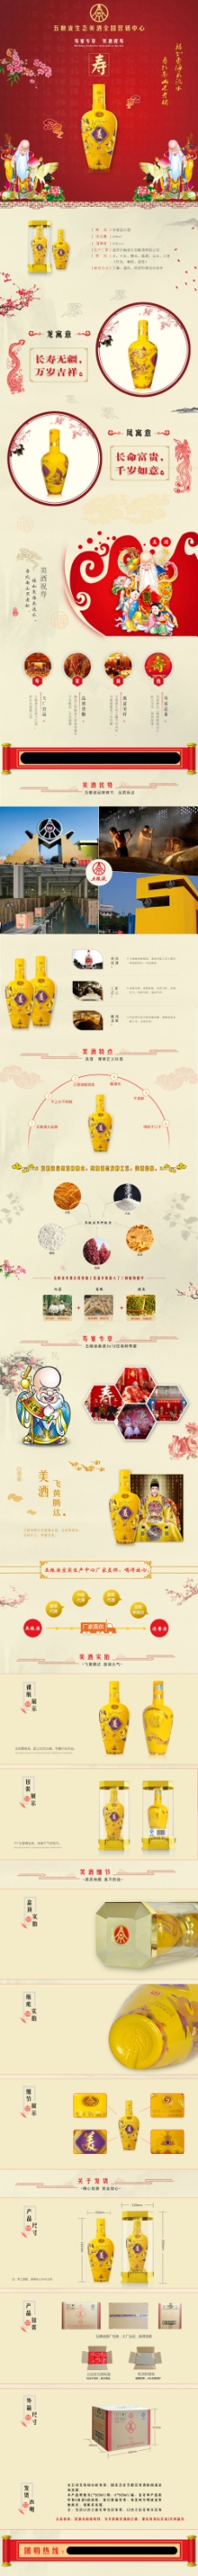 中国风情白酒寿宴详情产品介绍白酒展示中国风背景